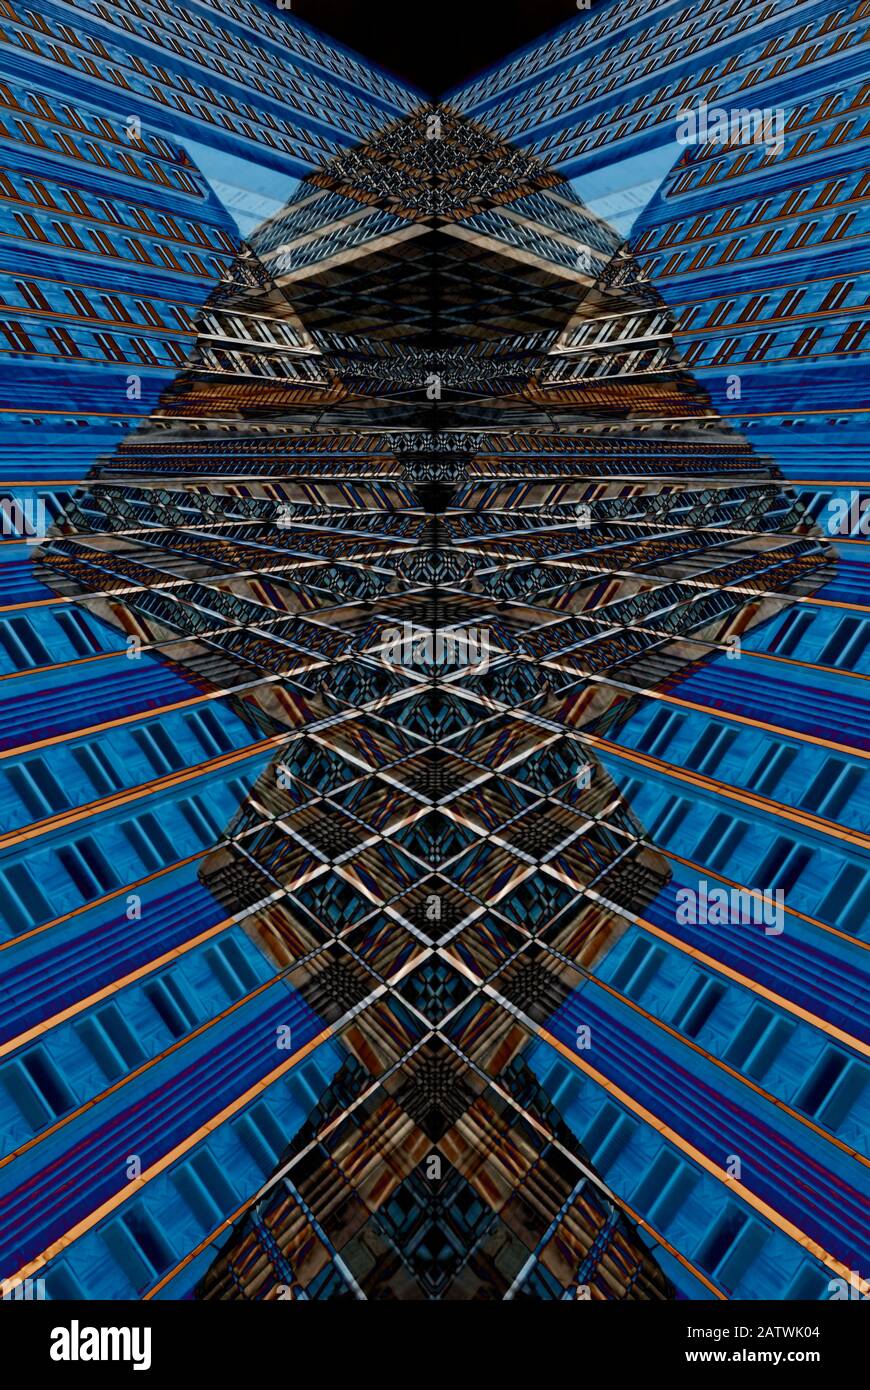 Astratto Geometrico digitale composito Della Facciata dell'Empire state Building a New York City, Stati Uniti d'America. Foto Stock